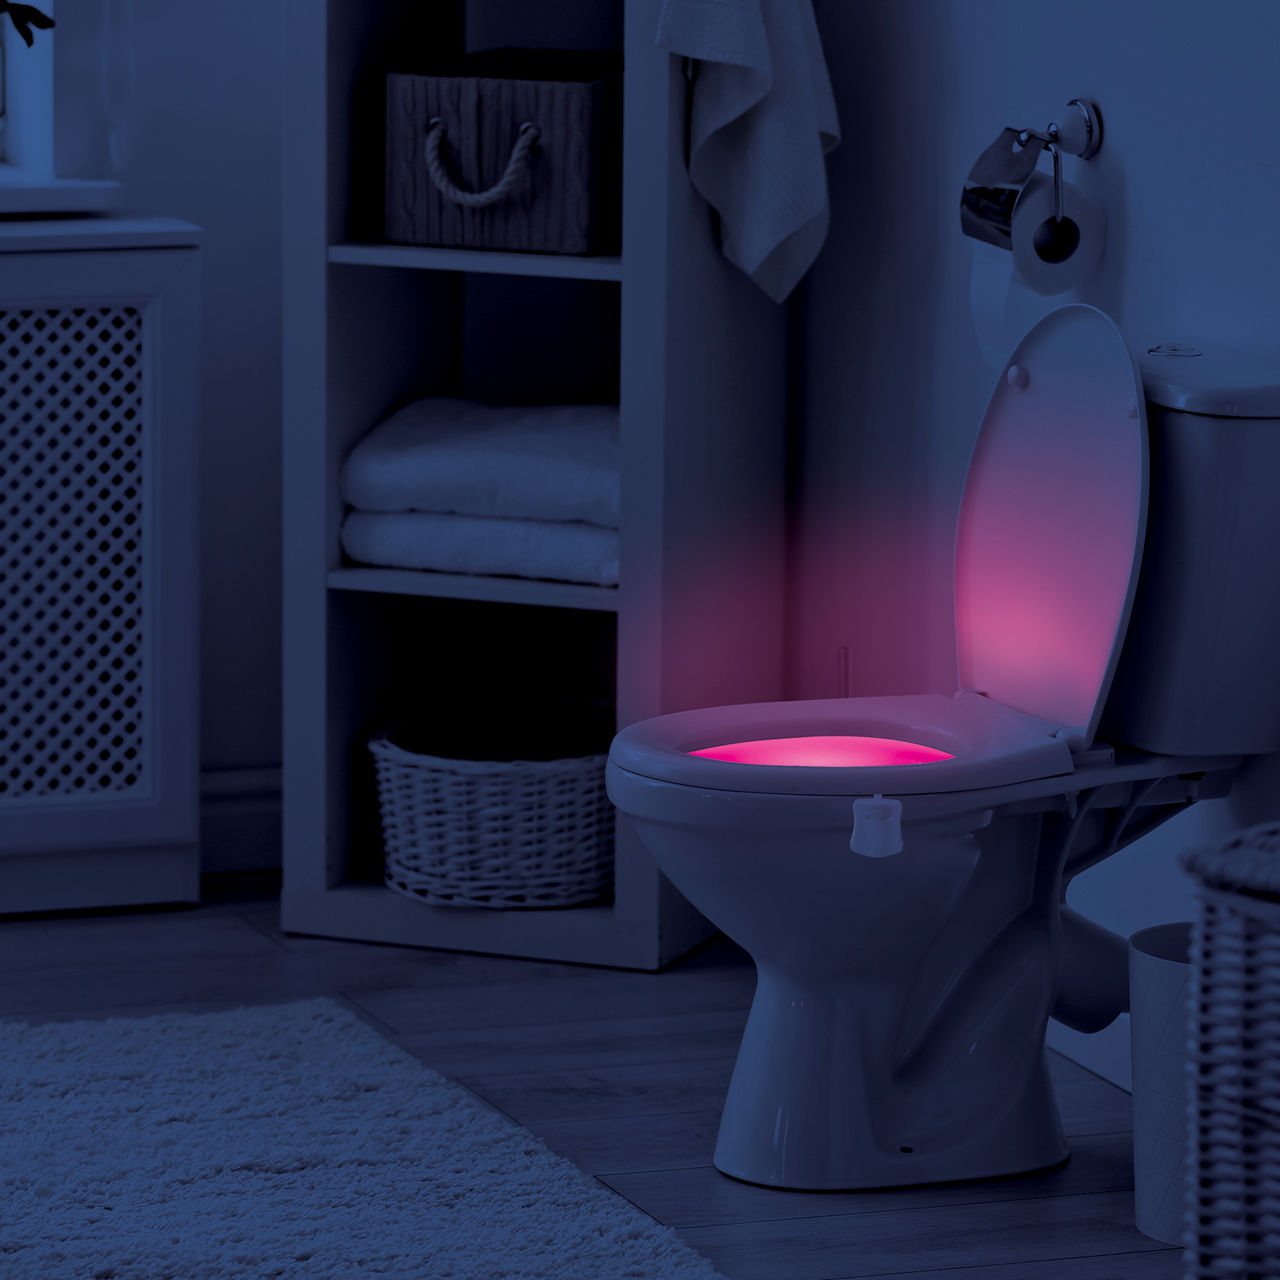 Toilet Seat Night Light